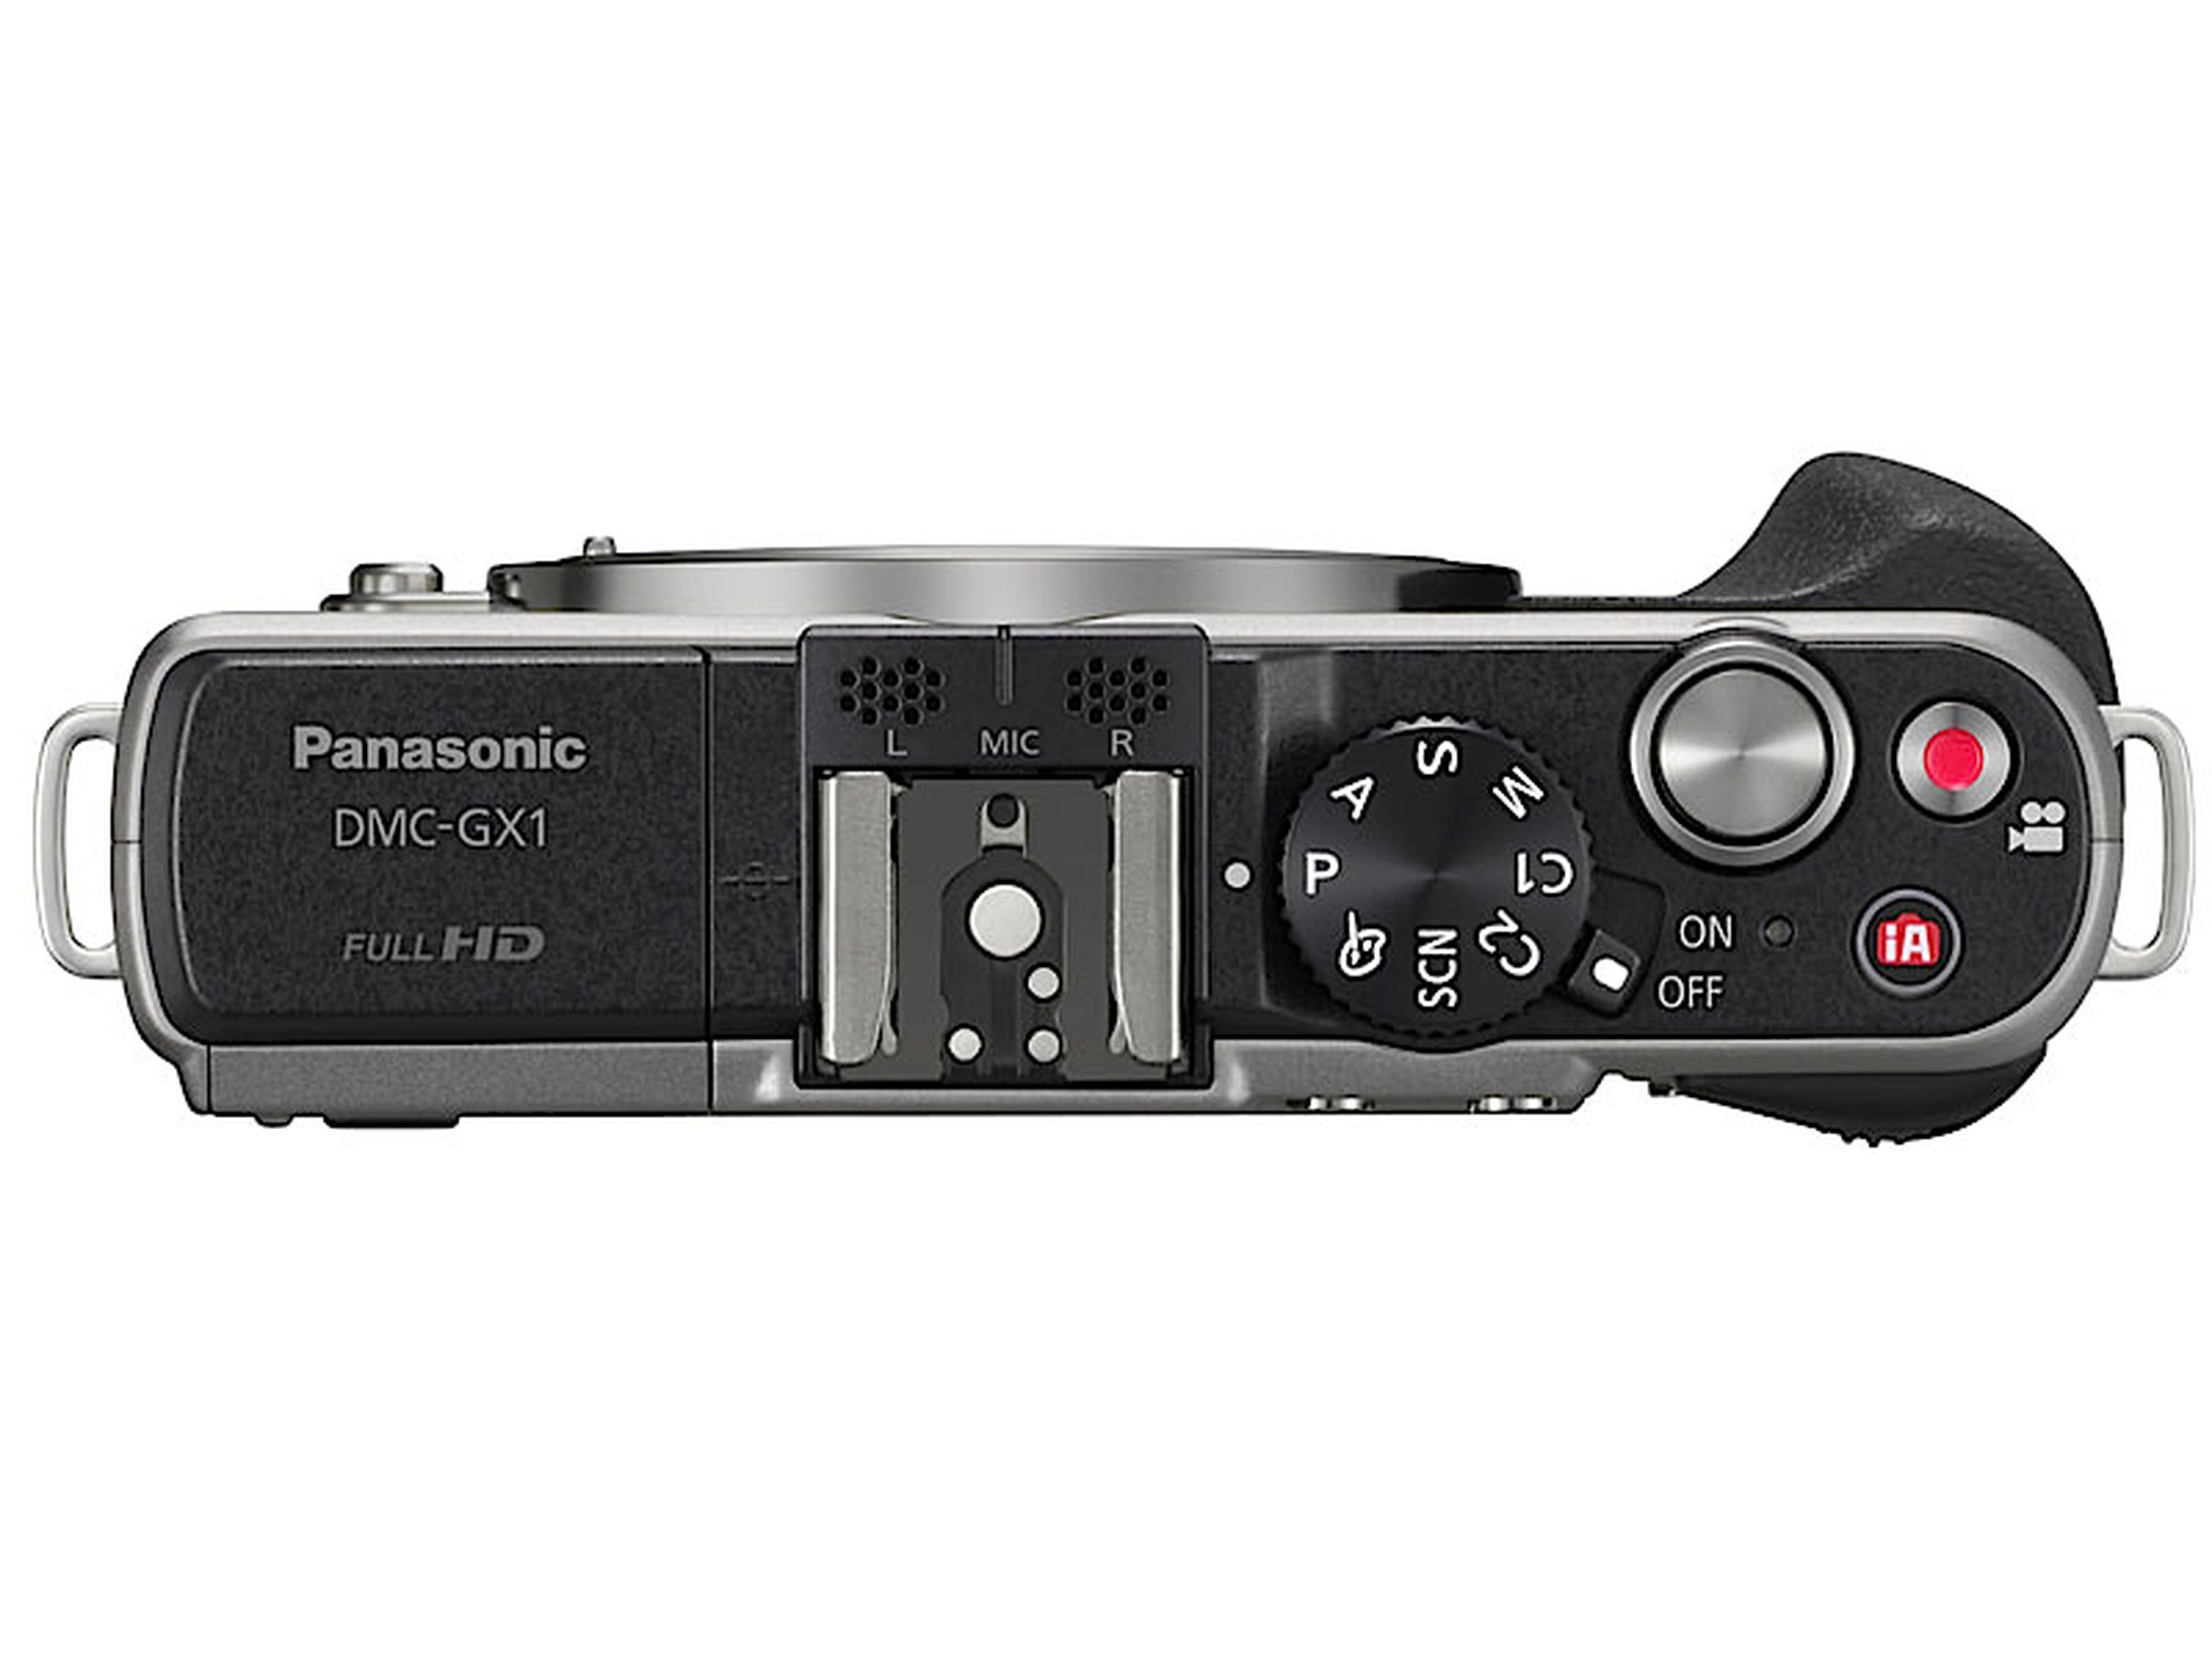 Panasonic DMC-GX1 press image gallery